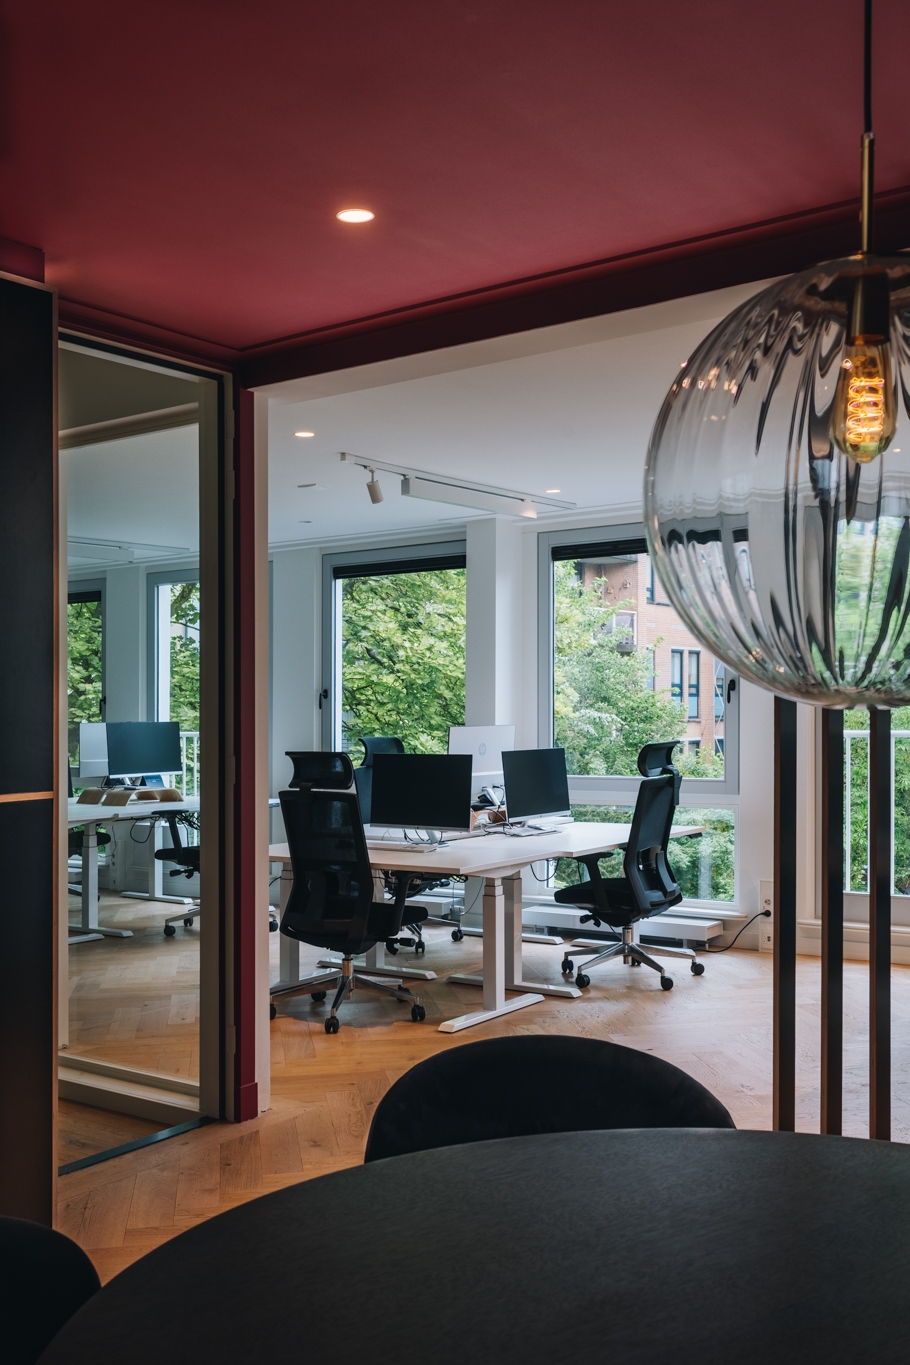 图片[7]|MR MARVIS办公室——阿姆斯特丹|ART-Arrakis | 建筑室内设计的创新与灵感